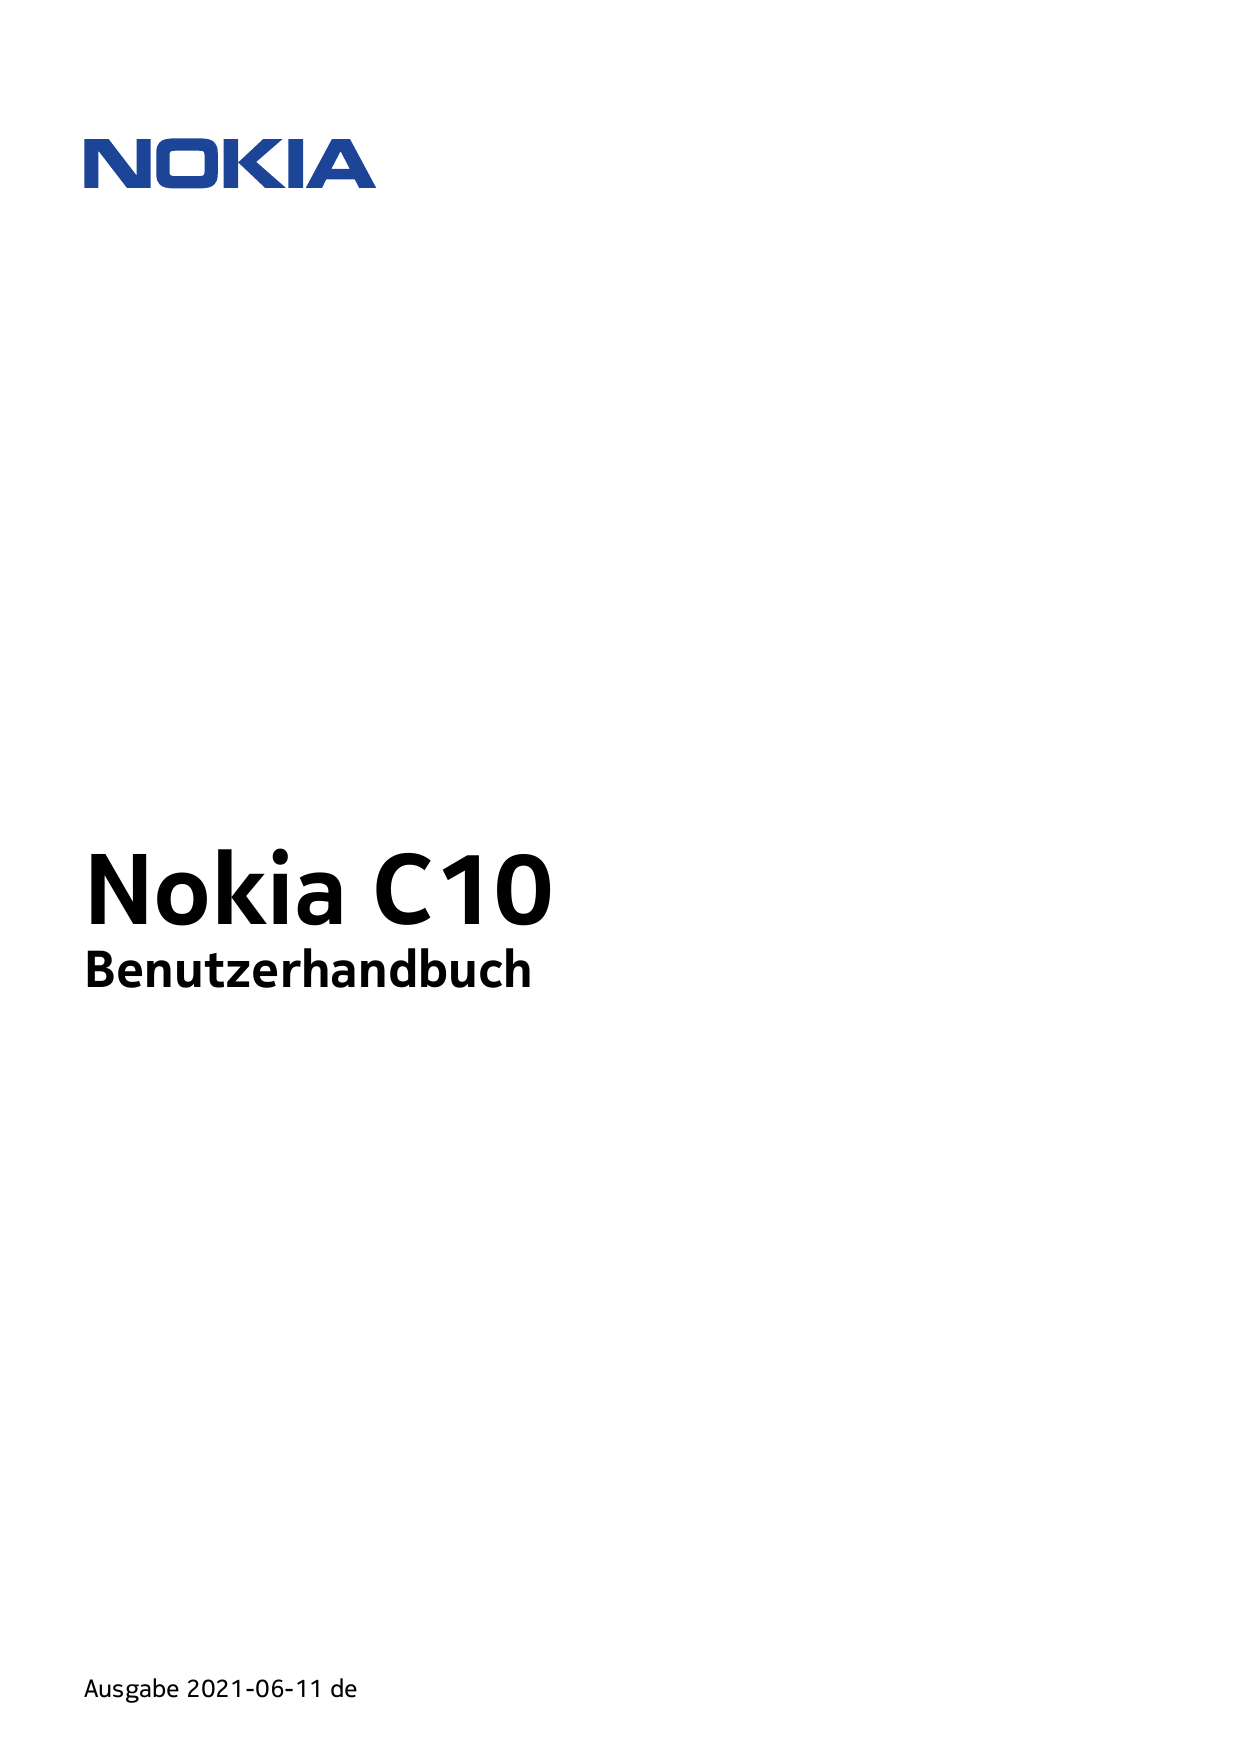 Nokia C10BenutzerhandbuchAusgabe 2021-06-11 de